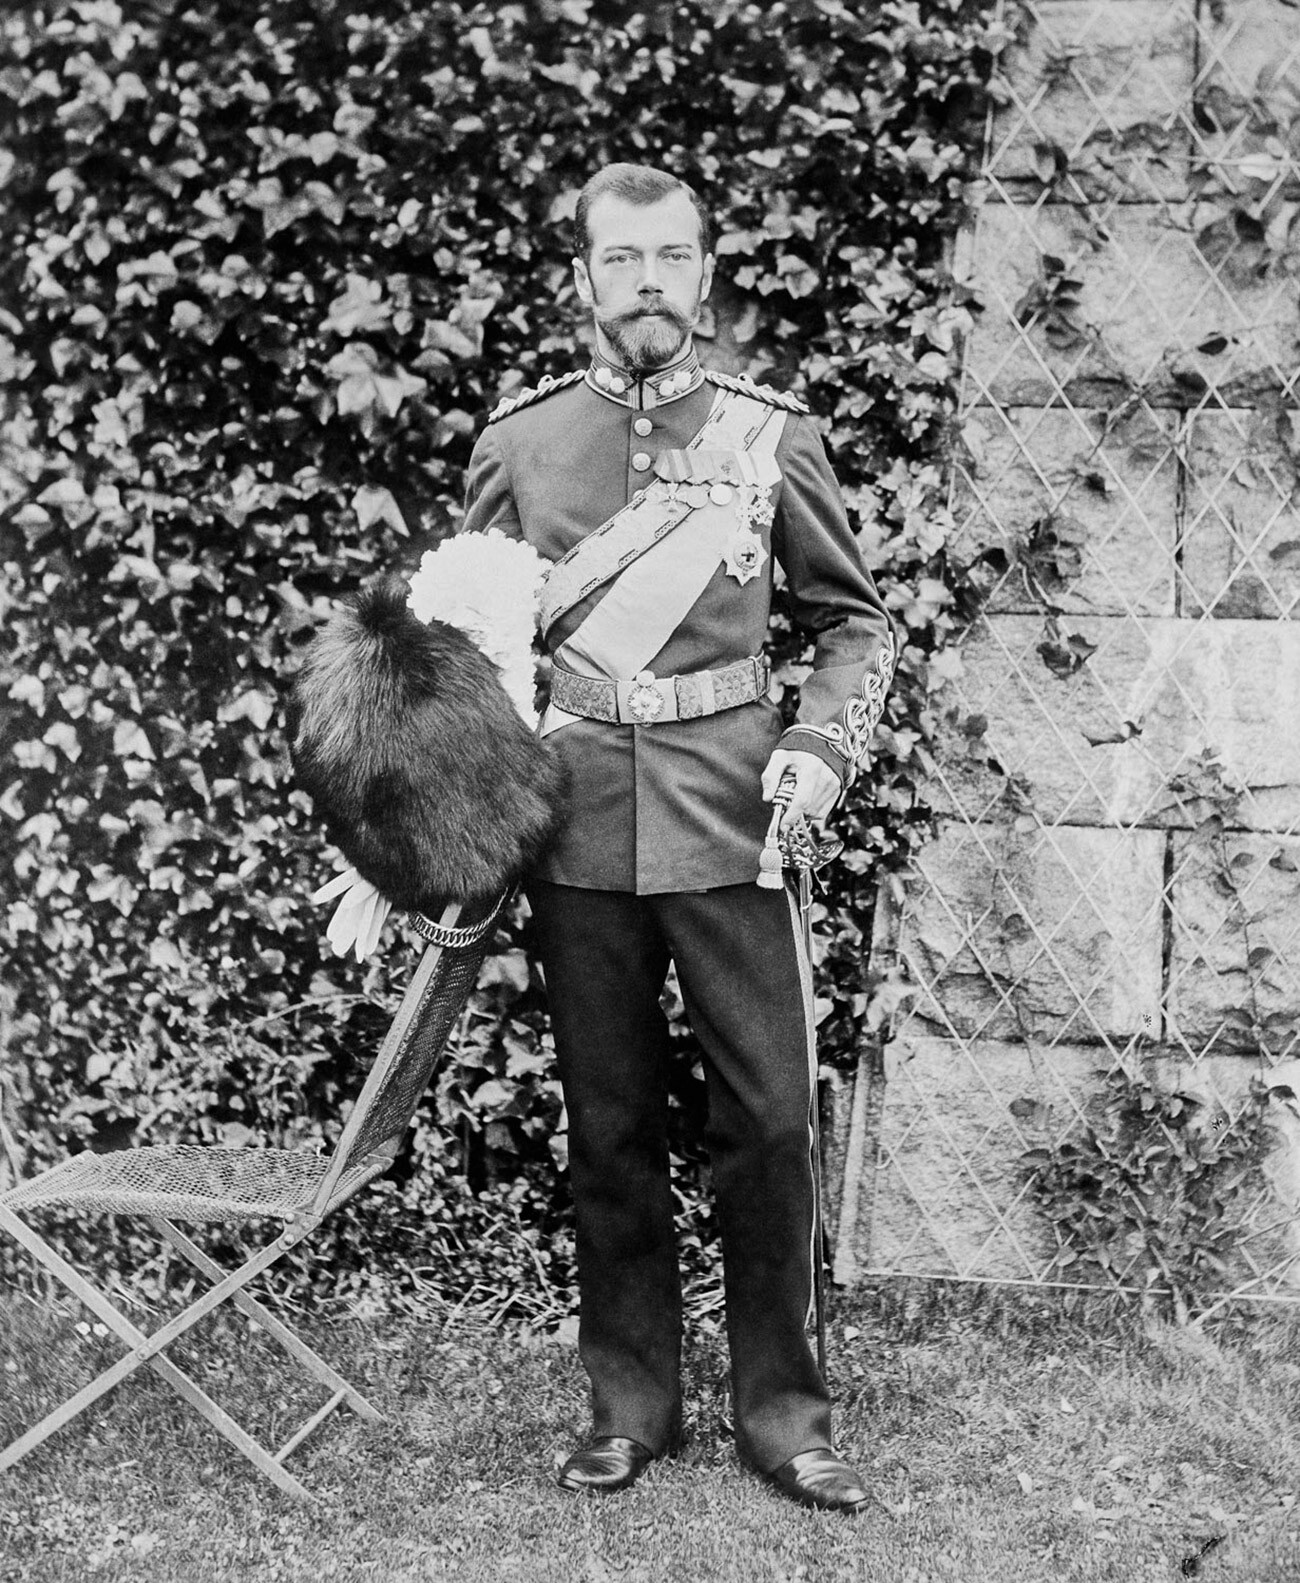 Tsar Nicholas II.